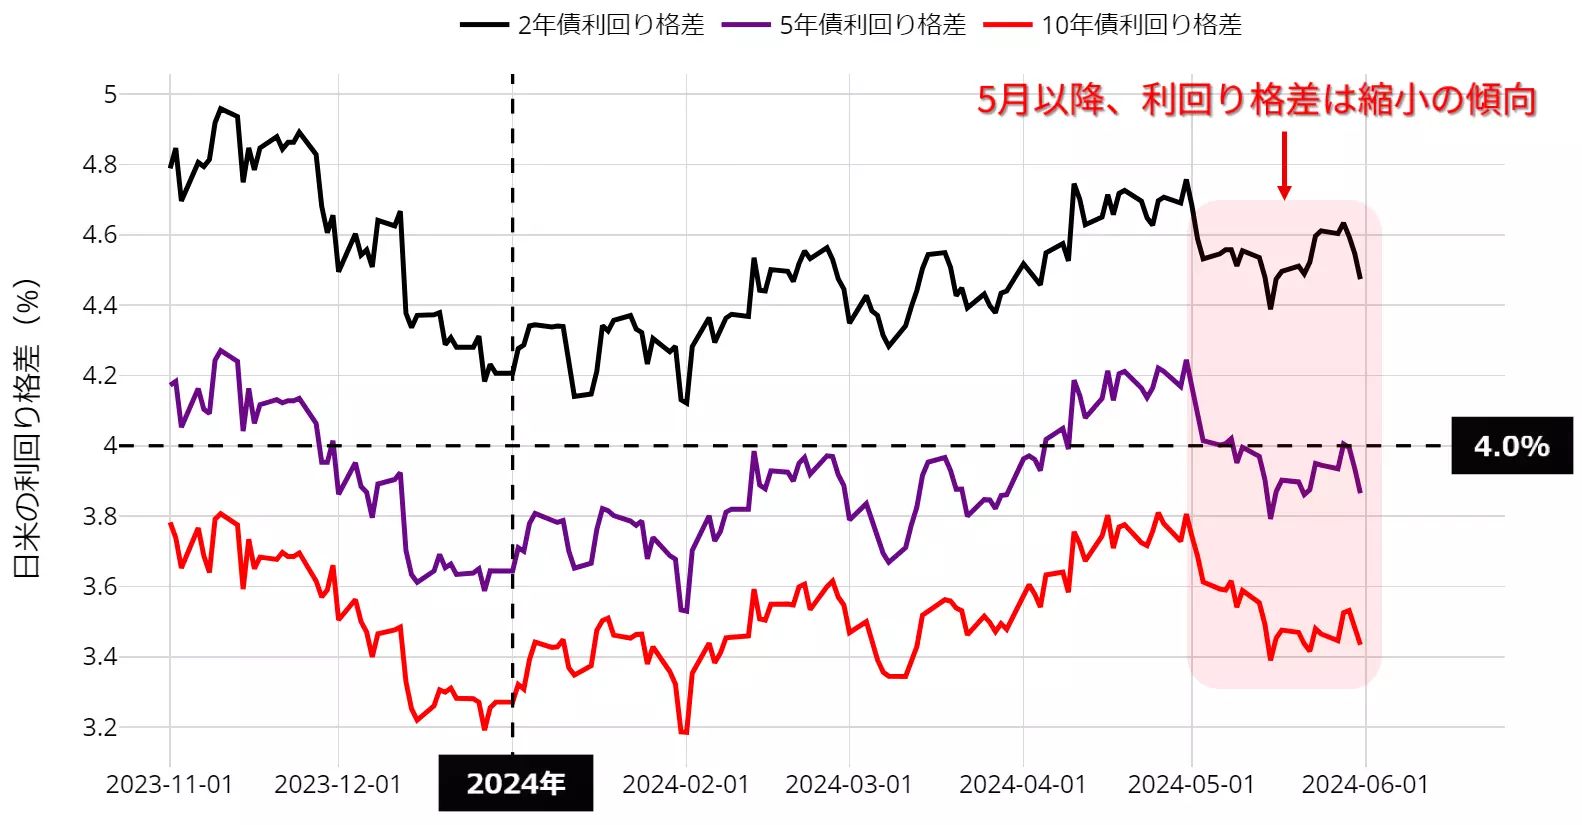 日米利回り格差の動向：23年11月以降